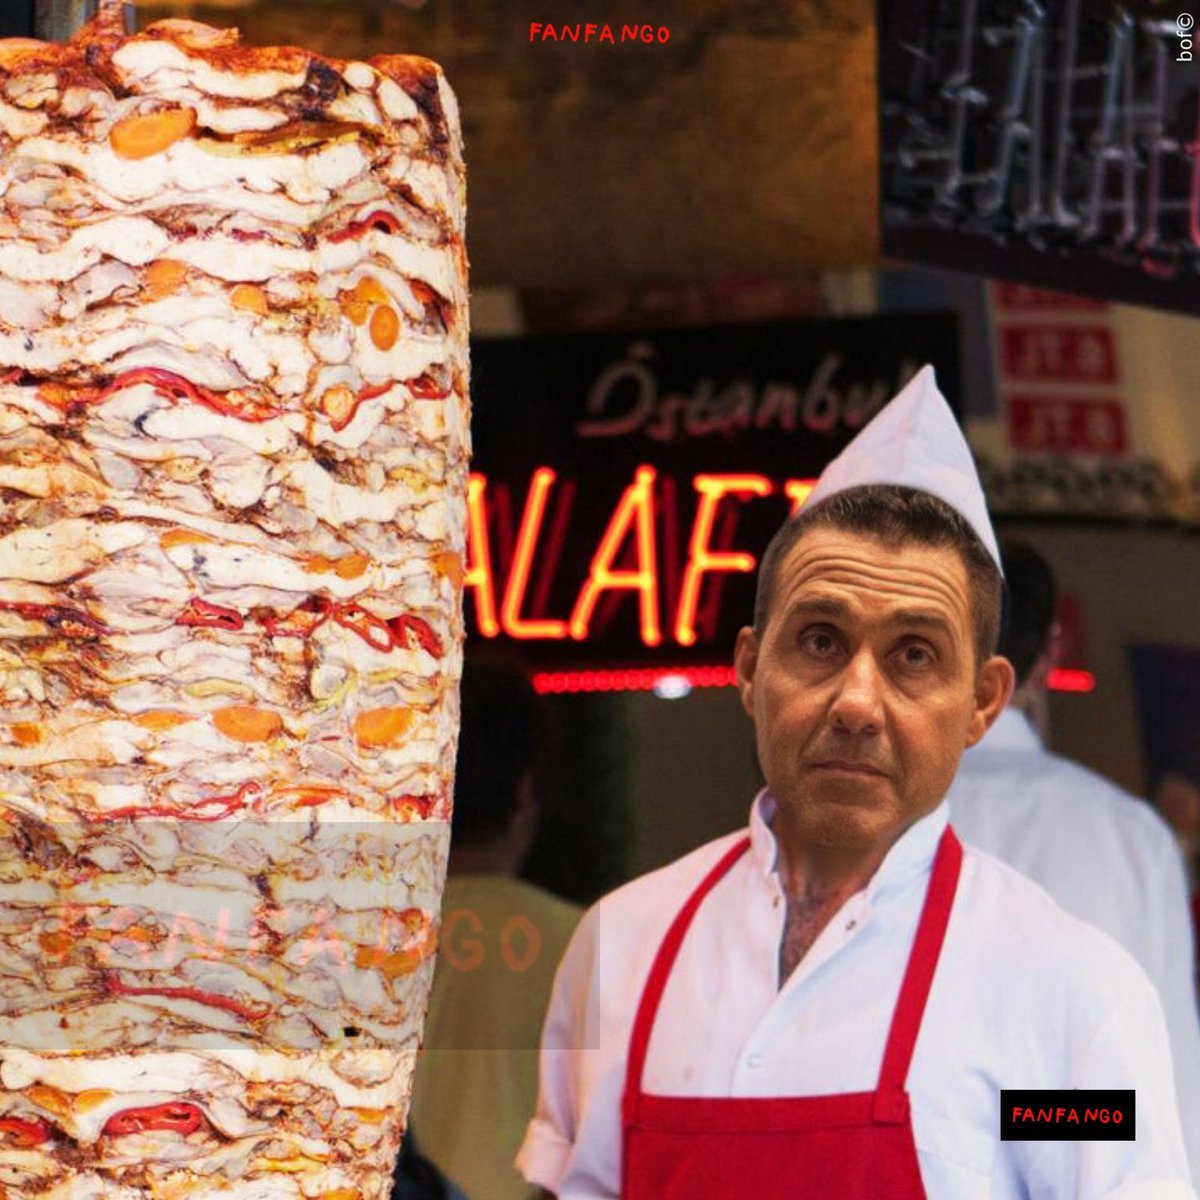 “Ma questo c’ha i tratti somatici caucasici? Mi sembra quello che mi vende il kebab!”. 
Effettivamente…
#robertovannacci #vannacci #kebab #italia #italiano #madeinitaly #salvini #europee #lega #satira #satirapolitica #parodia #meme #memeita #memeitalia #memesita #propagandatop